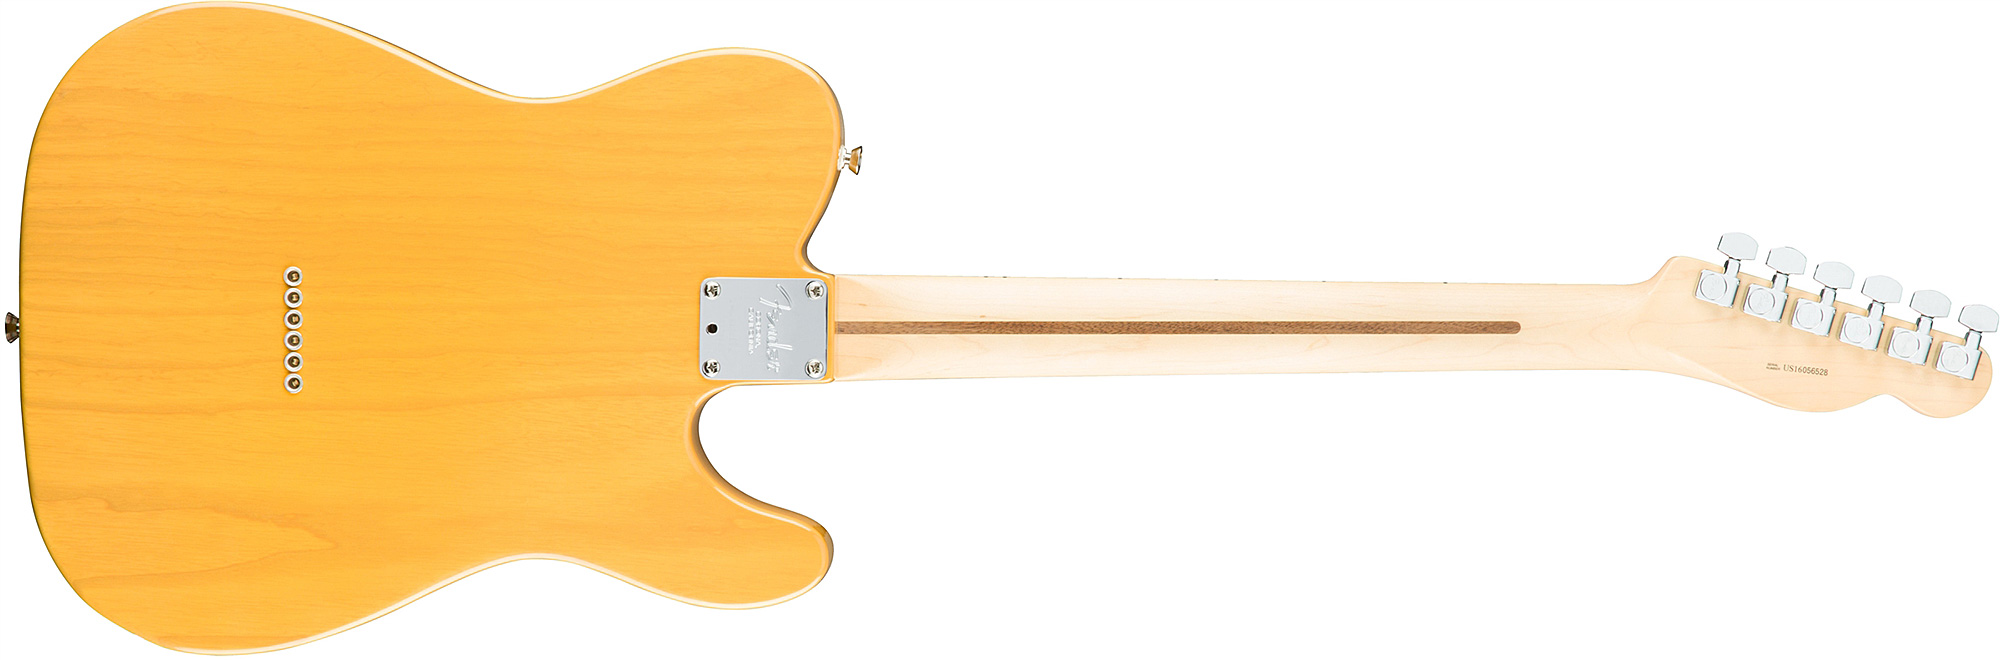 Fender Tele American Professional Lh Usa Gaucher 2s Mn - Butterscotch Blonde - E-Gitarre für Linkshänder - Variation 1